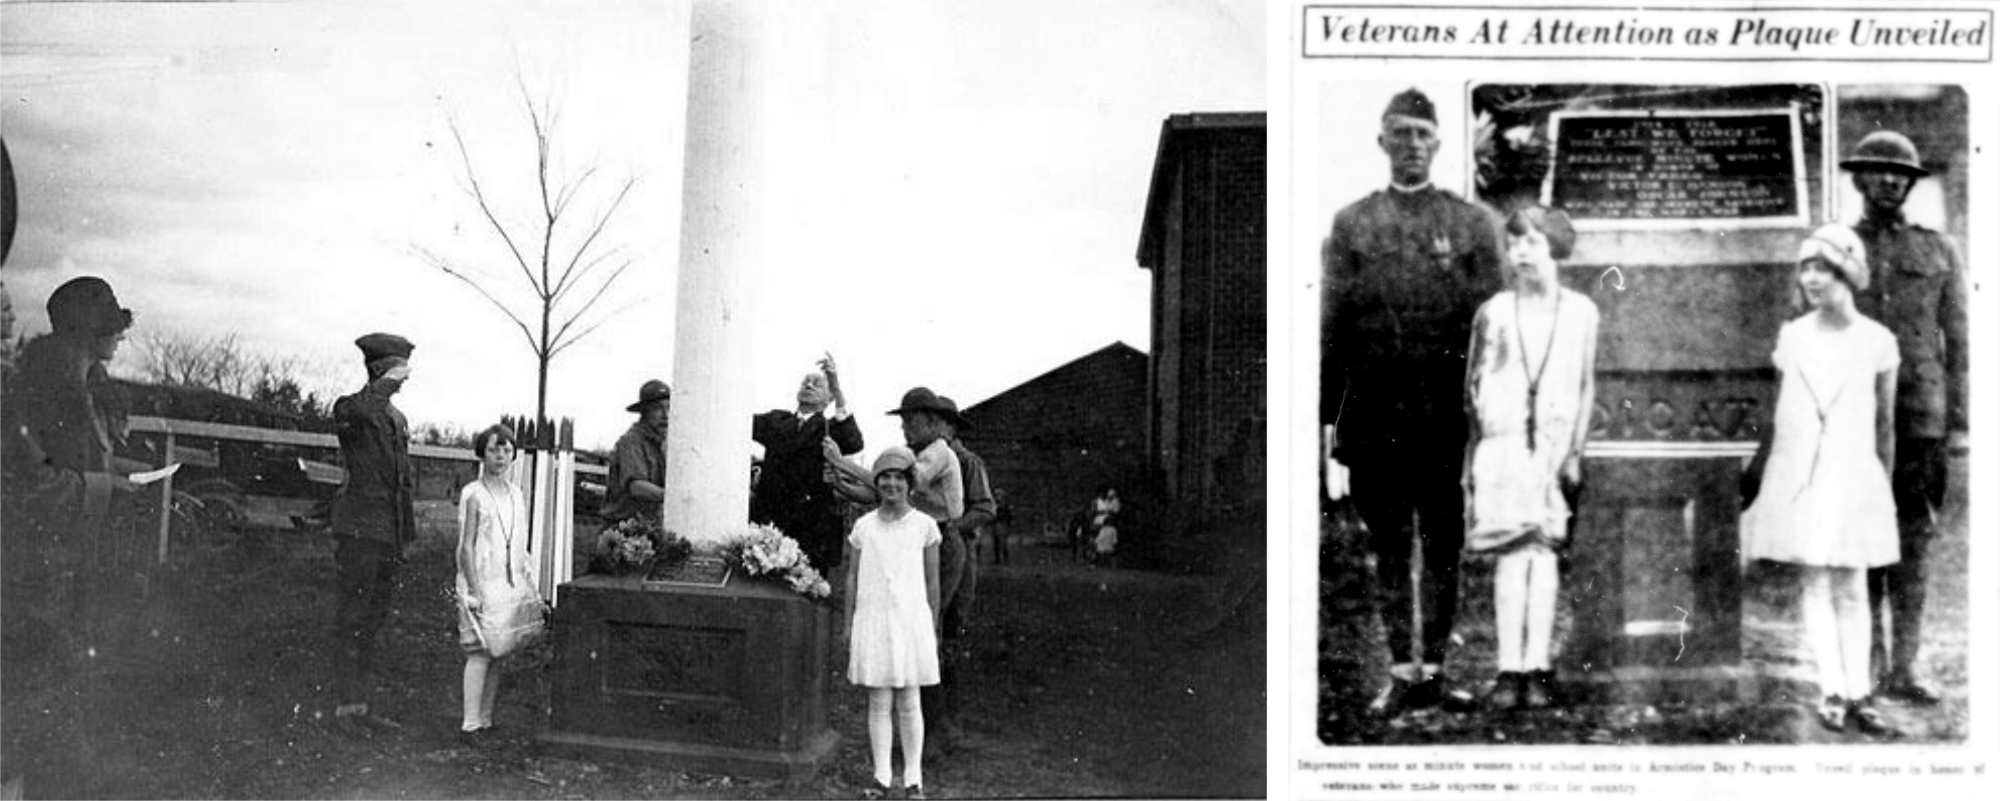 Memorial Dedication 1926